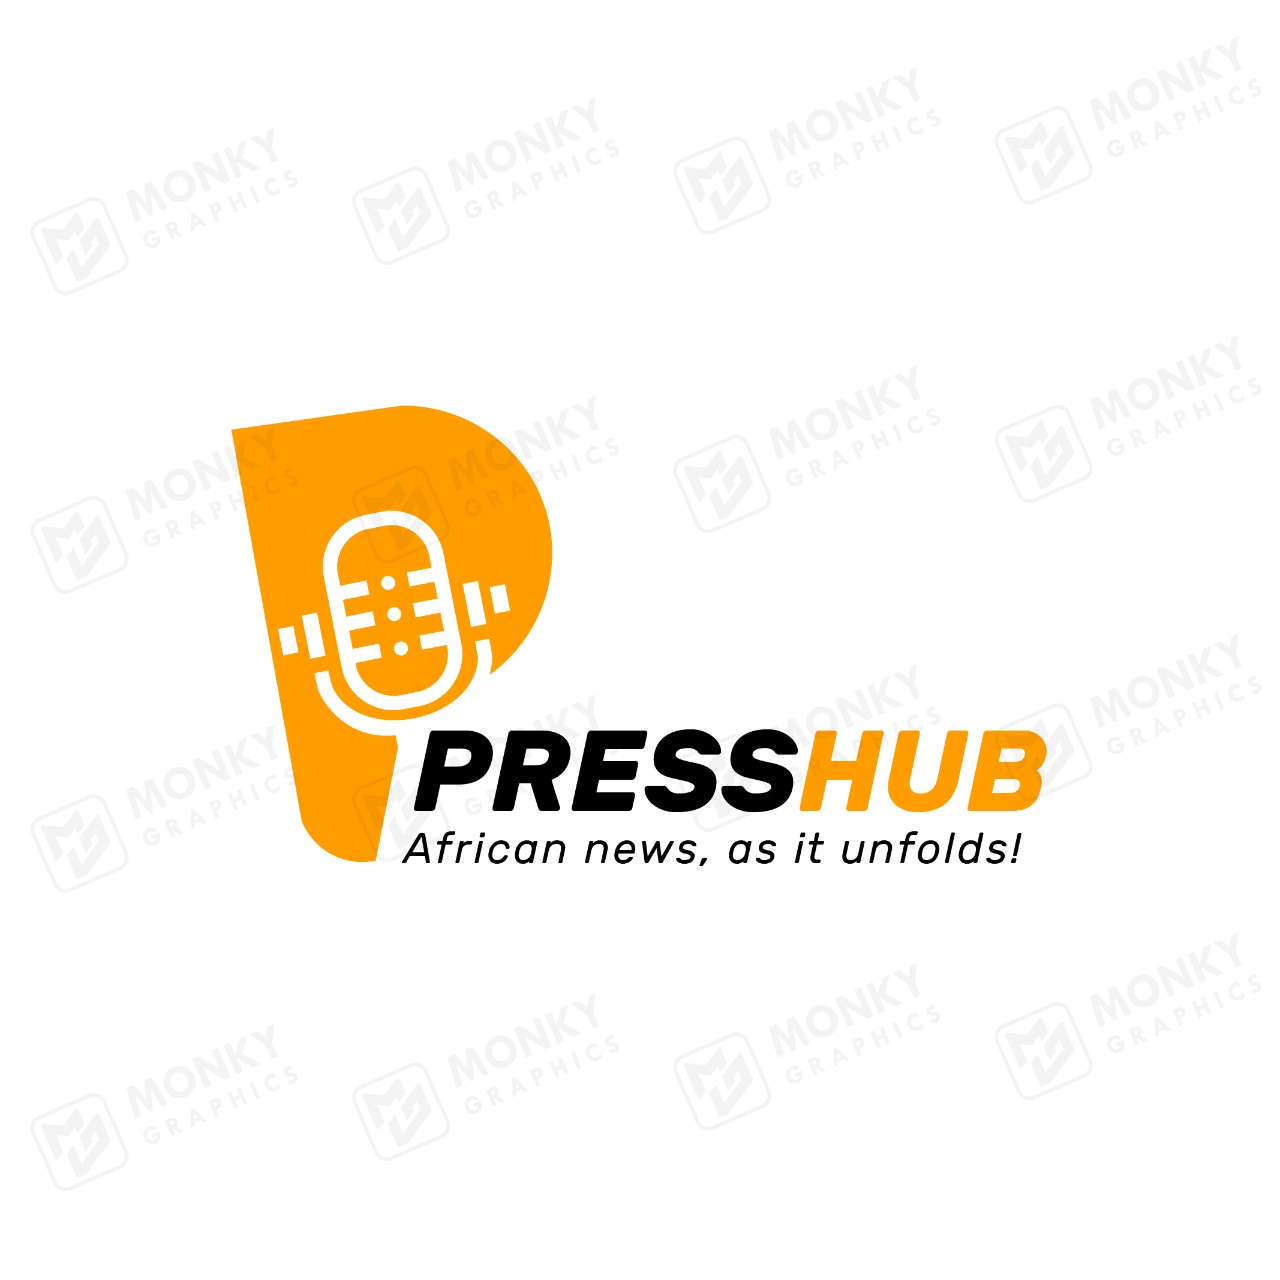 Press Hub